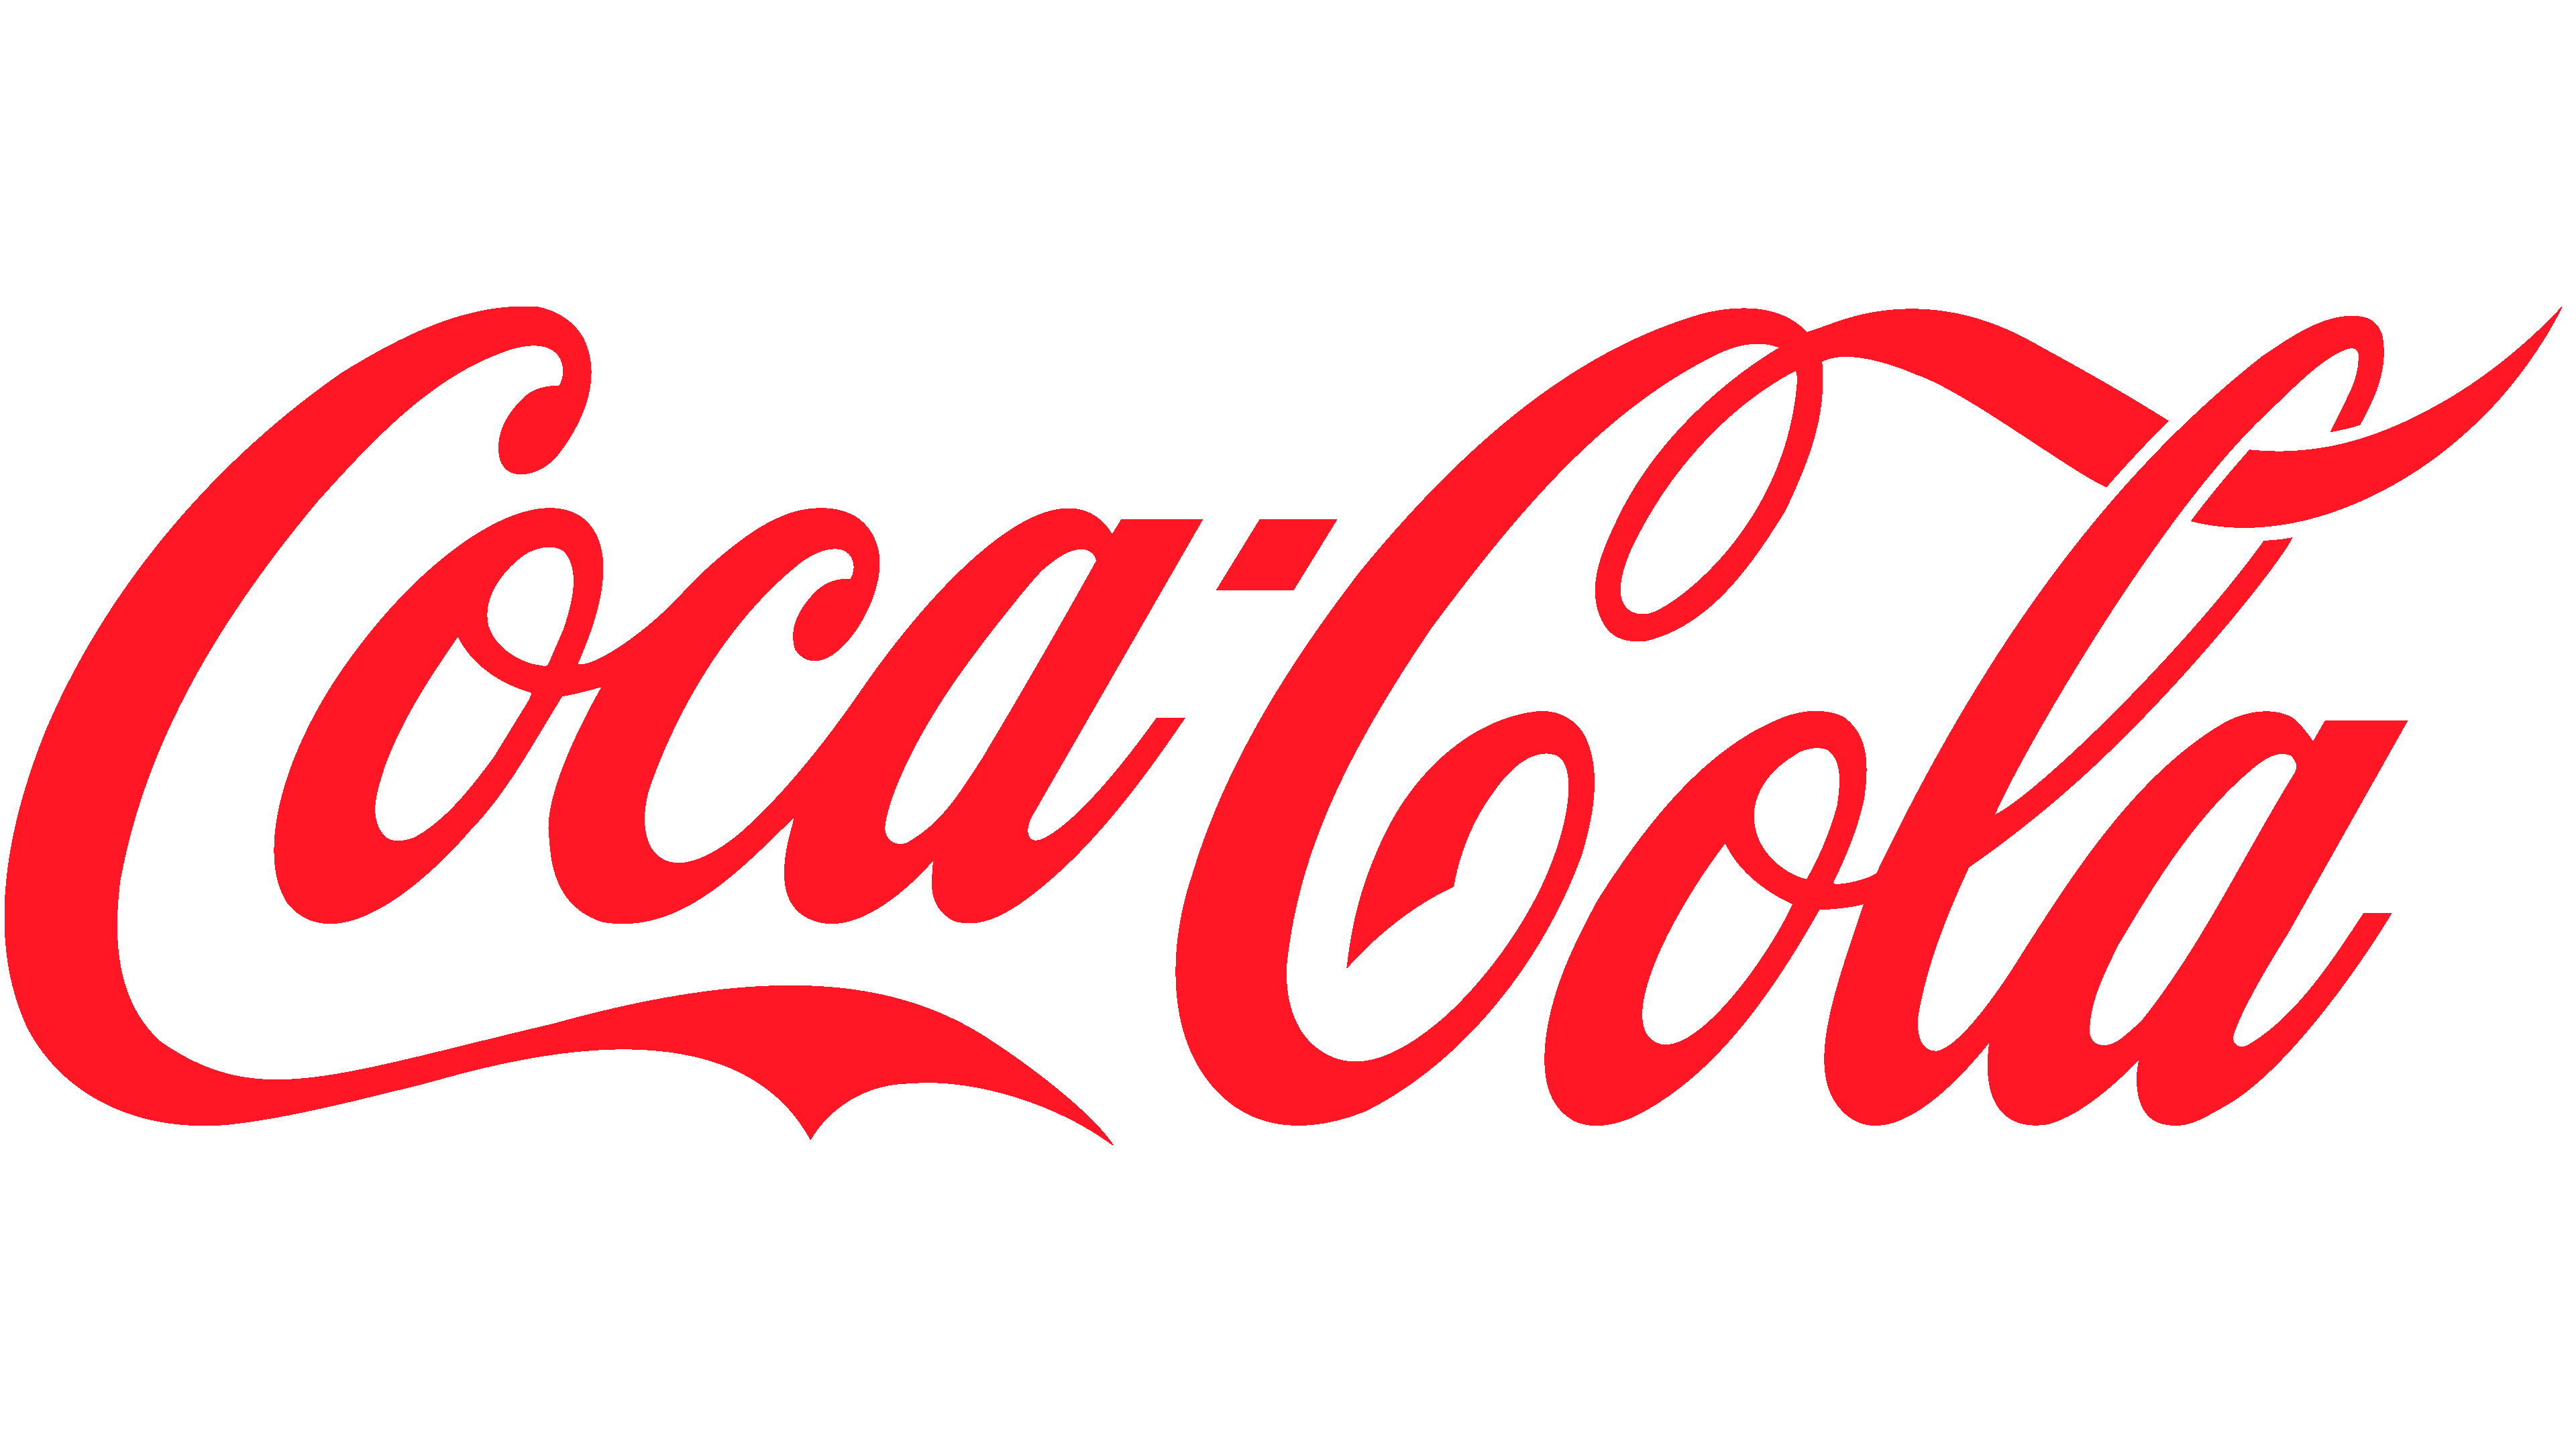 Coca Cola Logo PNG Clipart